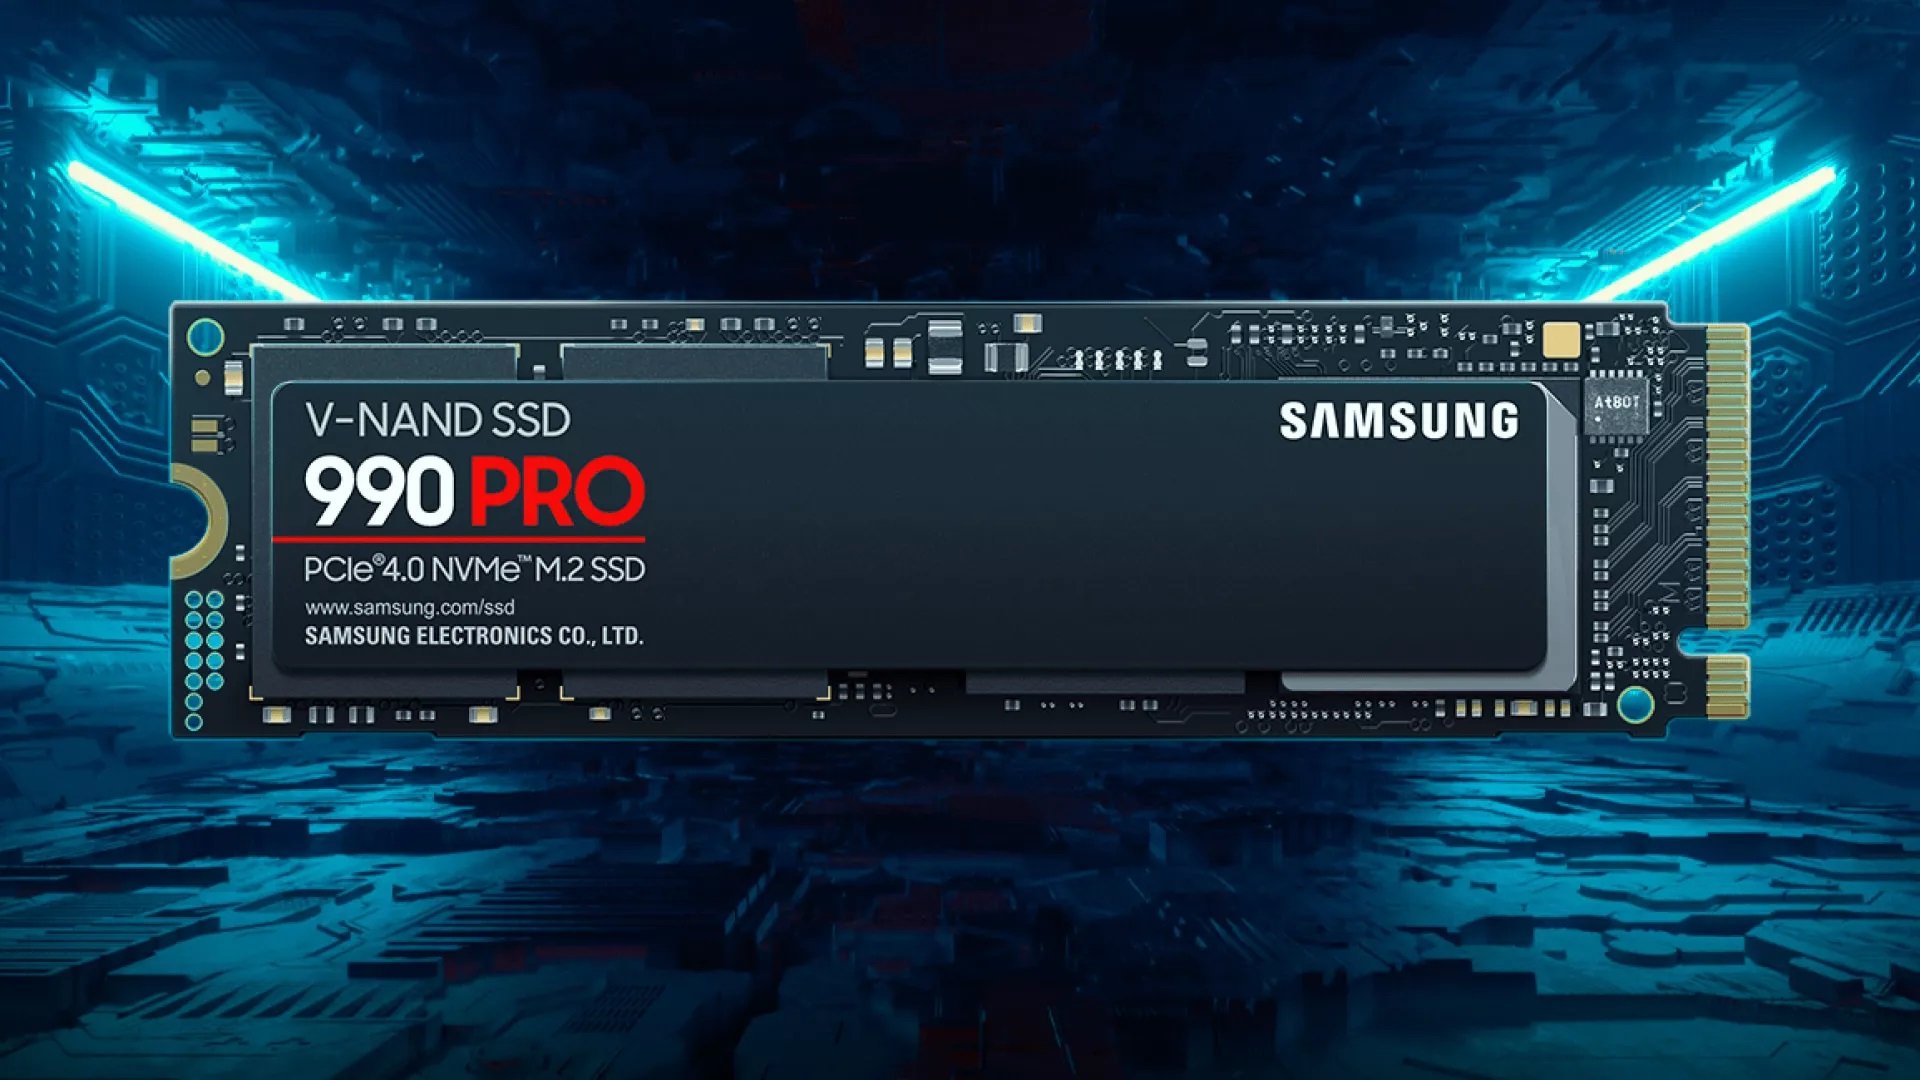 Χρήστες βλέπουν την κατάσταση της υγείας του Samsung 990 Pro SSD τους να υποβαθμίζεται με ταχείς ρυθμούς